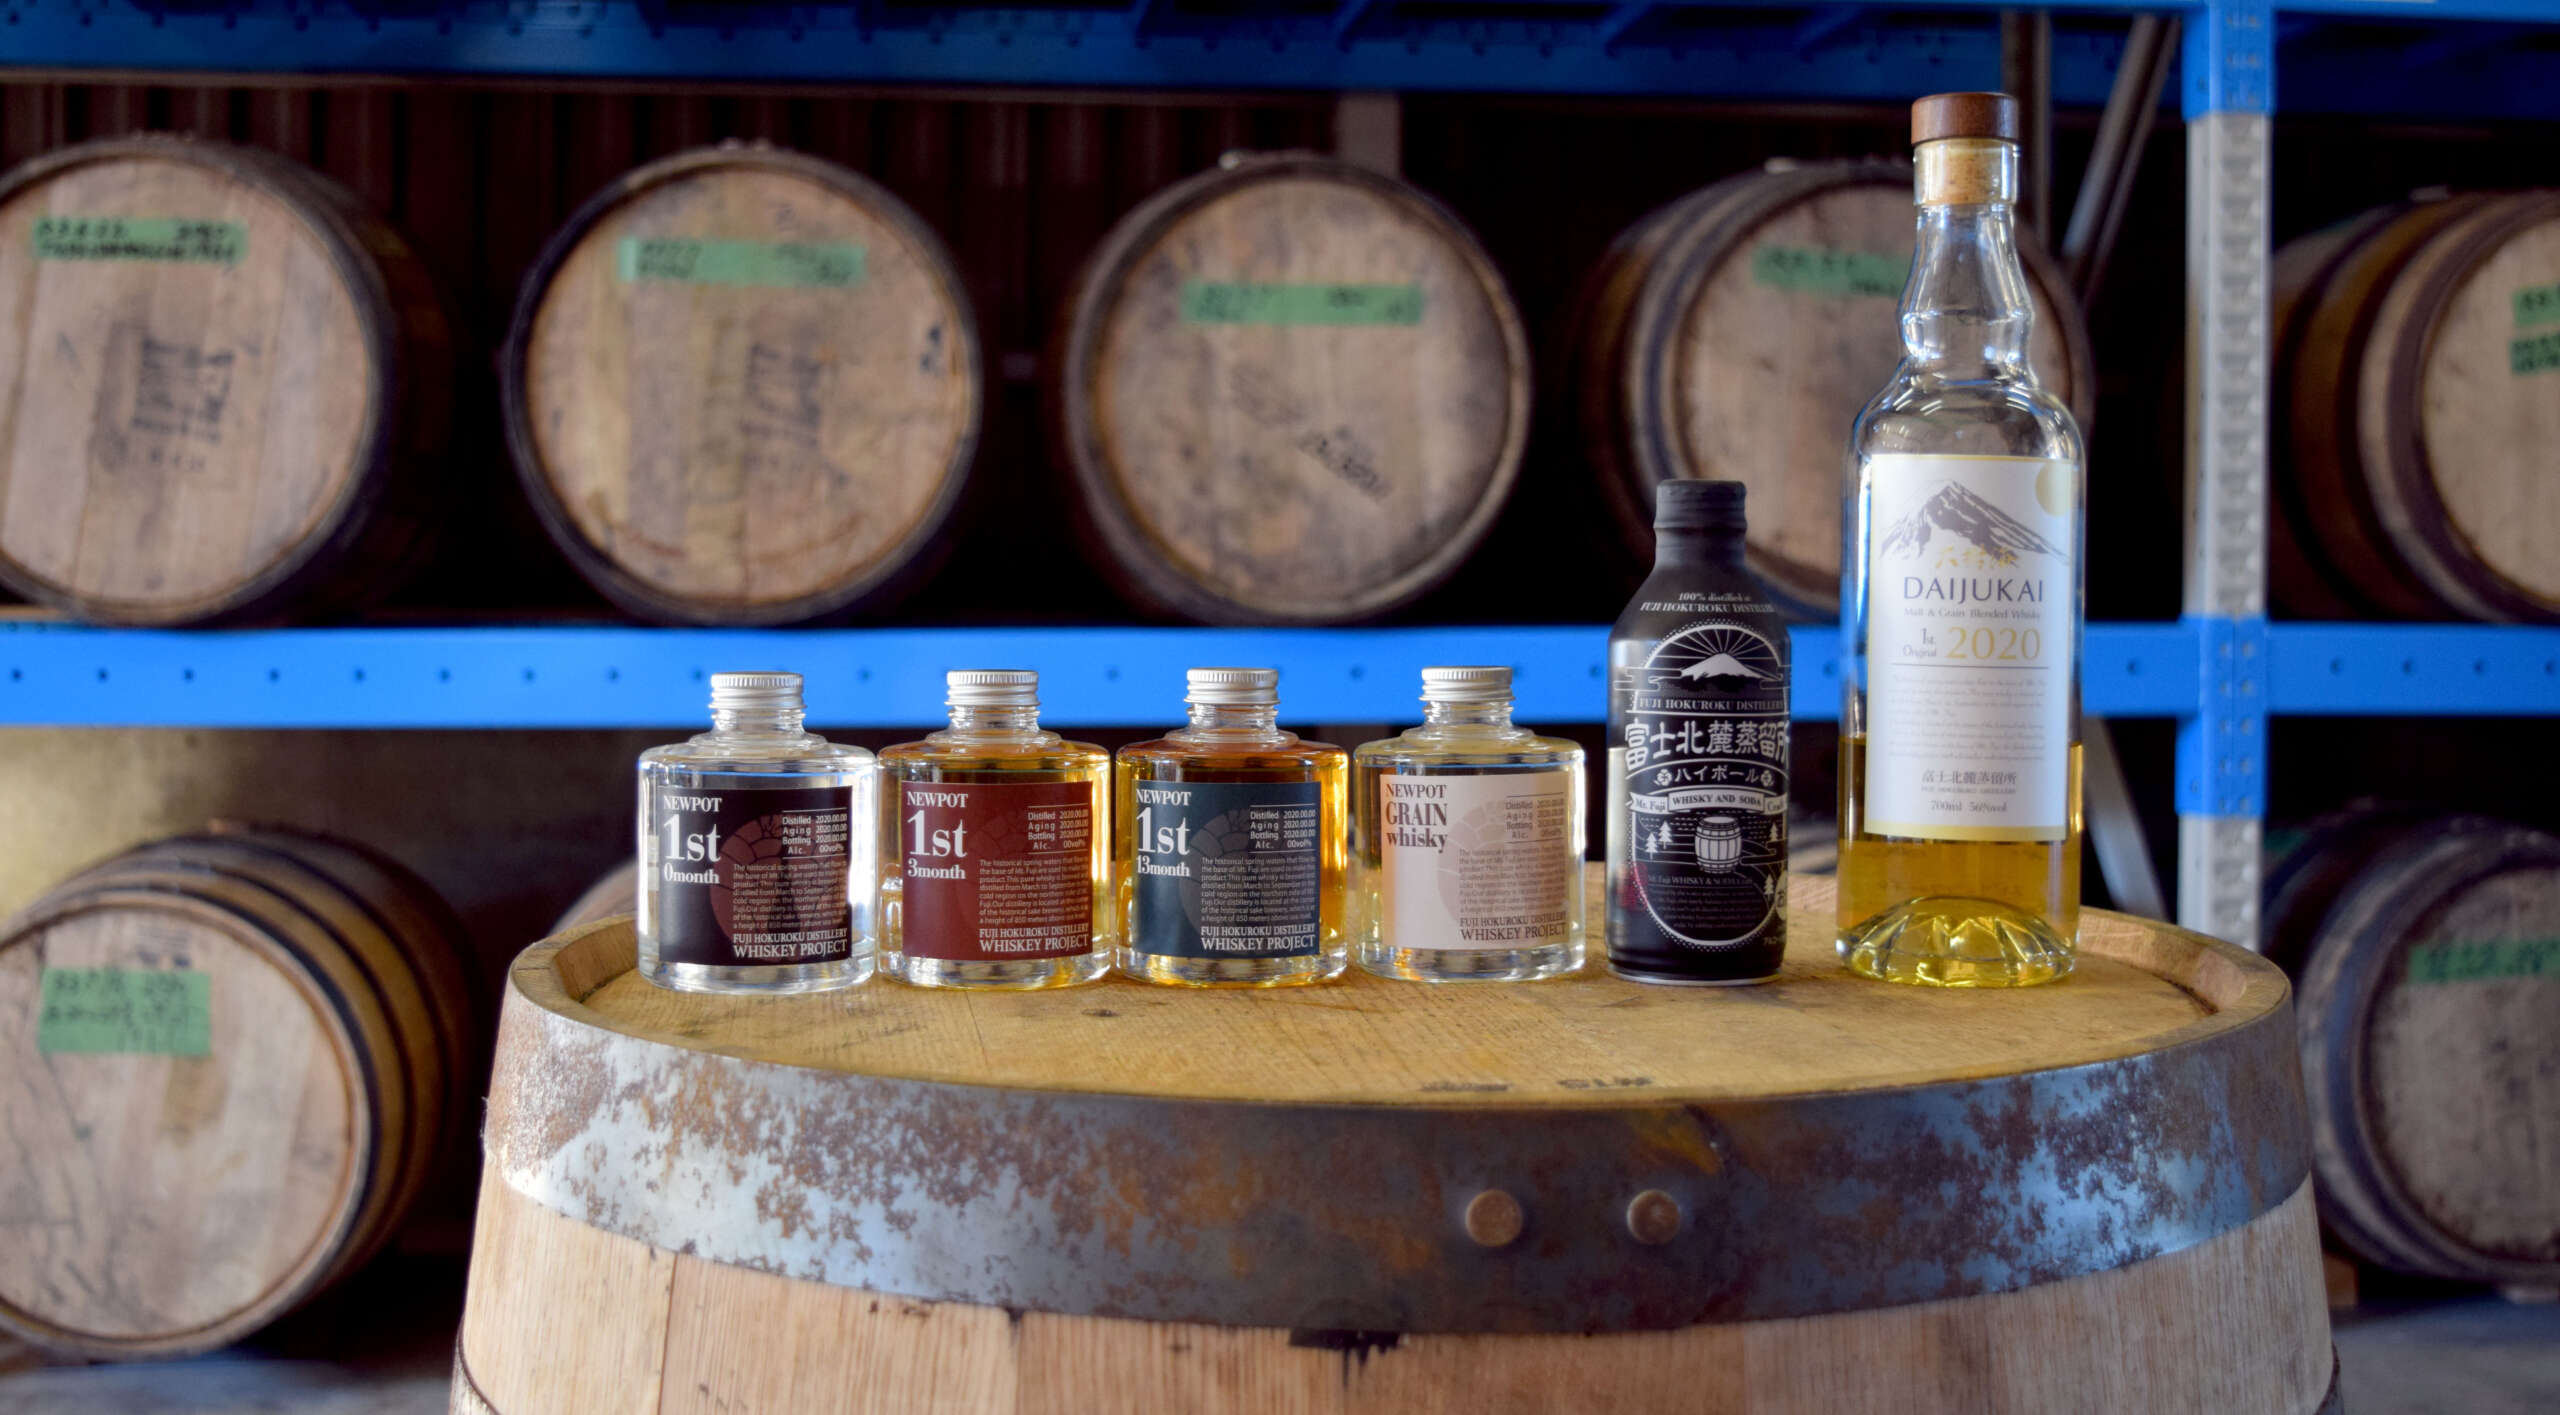 「甲斐の開運」の井出醸造店、170年の歴史にウイスキーの新風